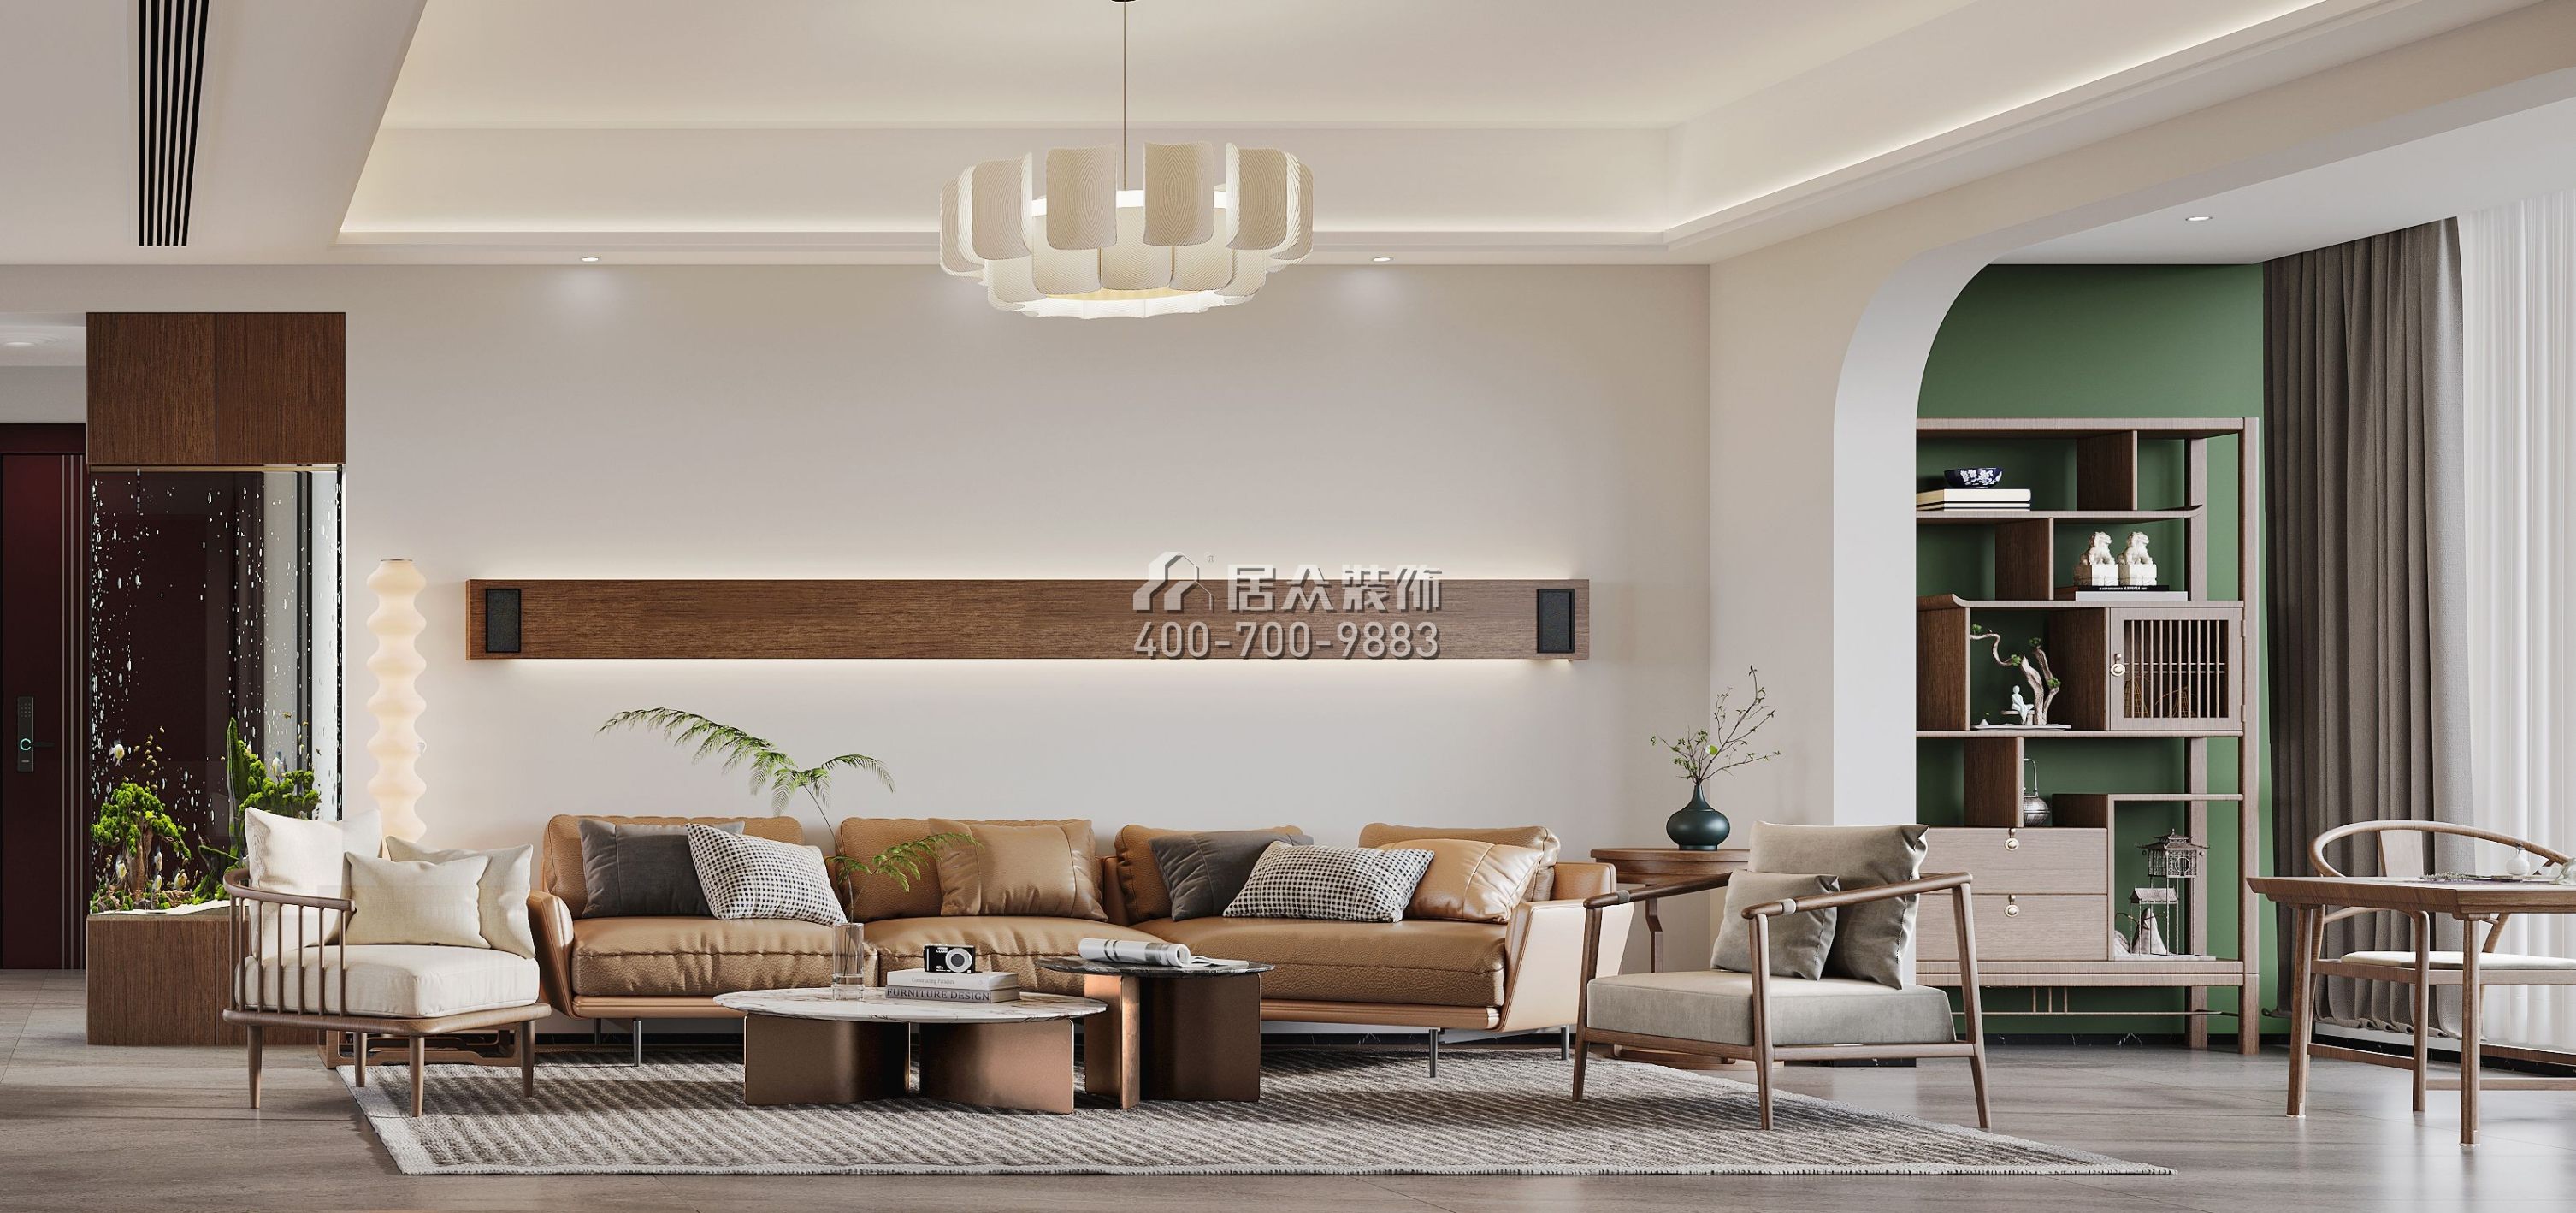 中澳春城180平方米現代簡約風格平層戶型客廳裝修效果圖